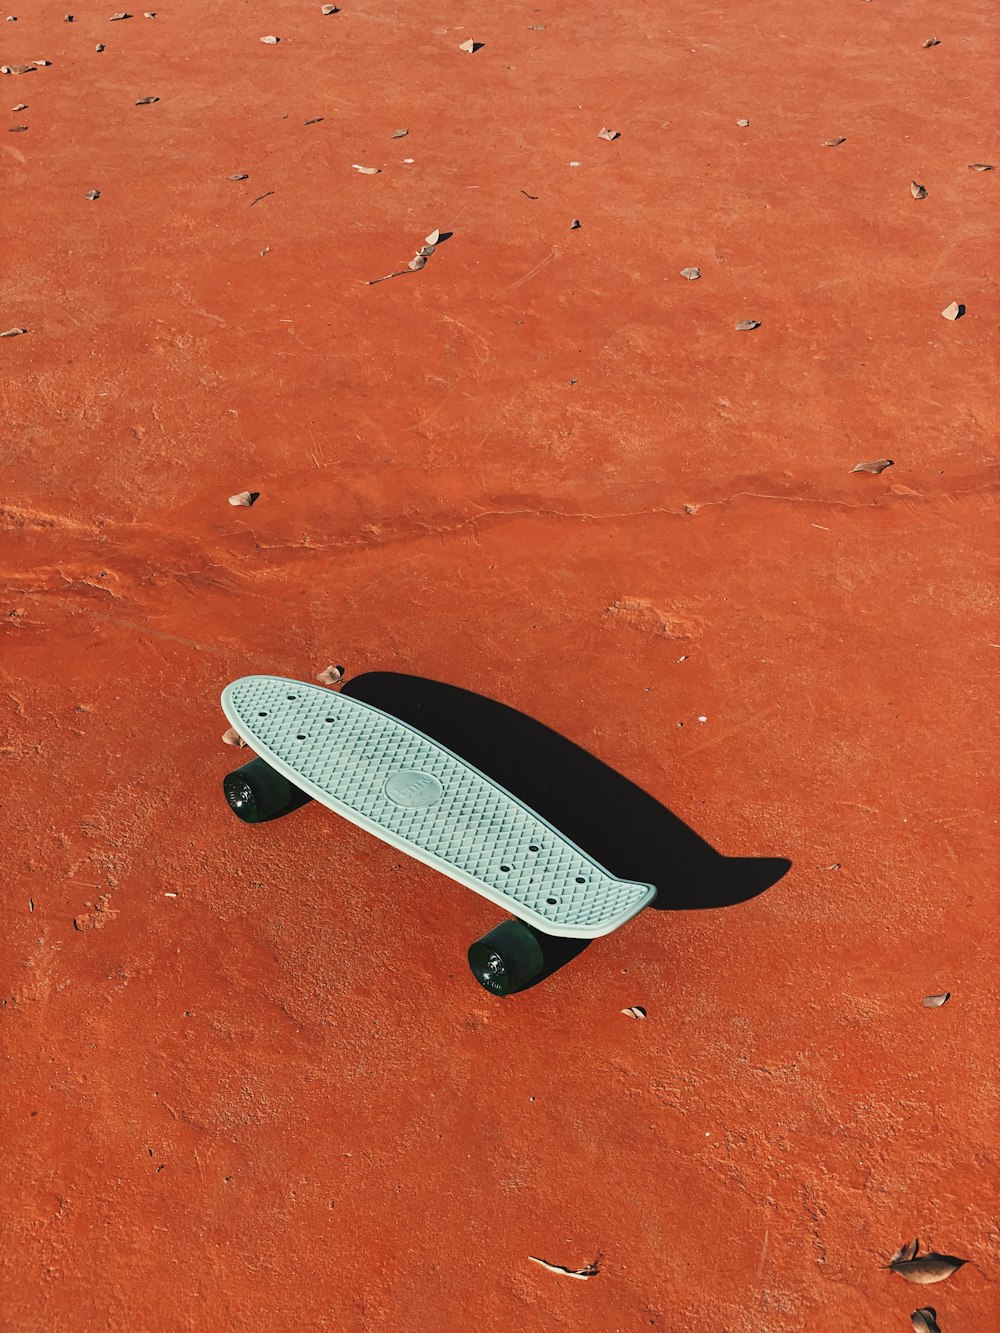 skateboard blanc et noir sur sable brun